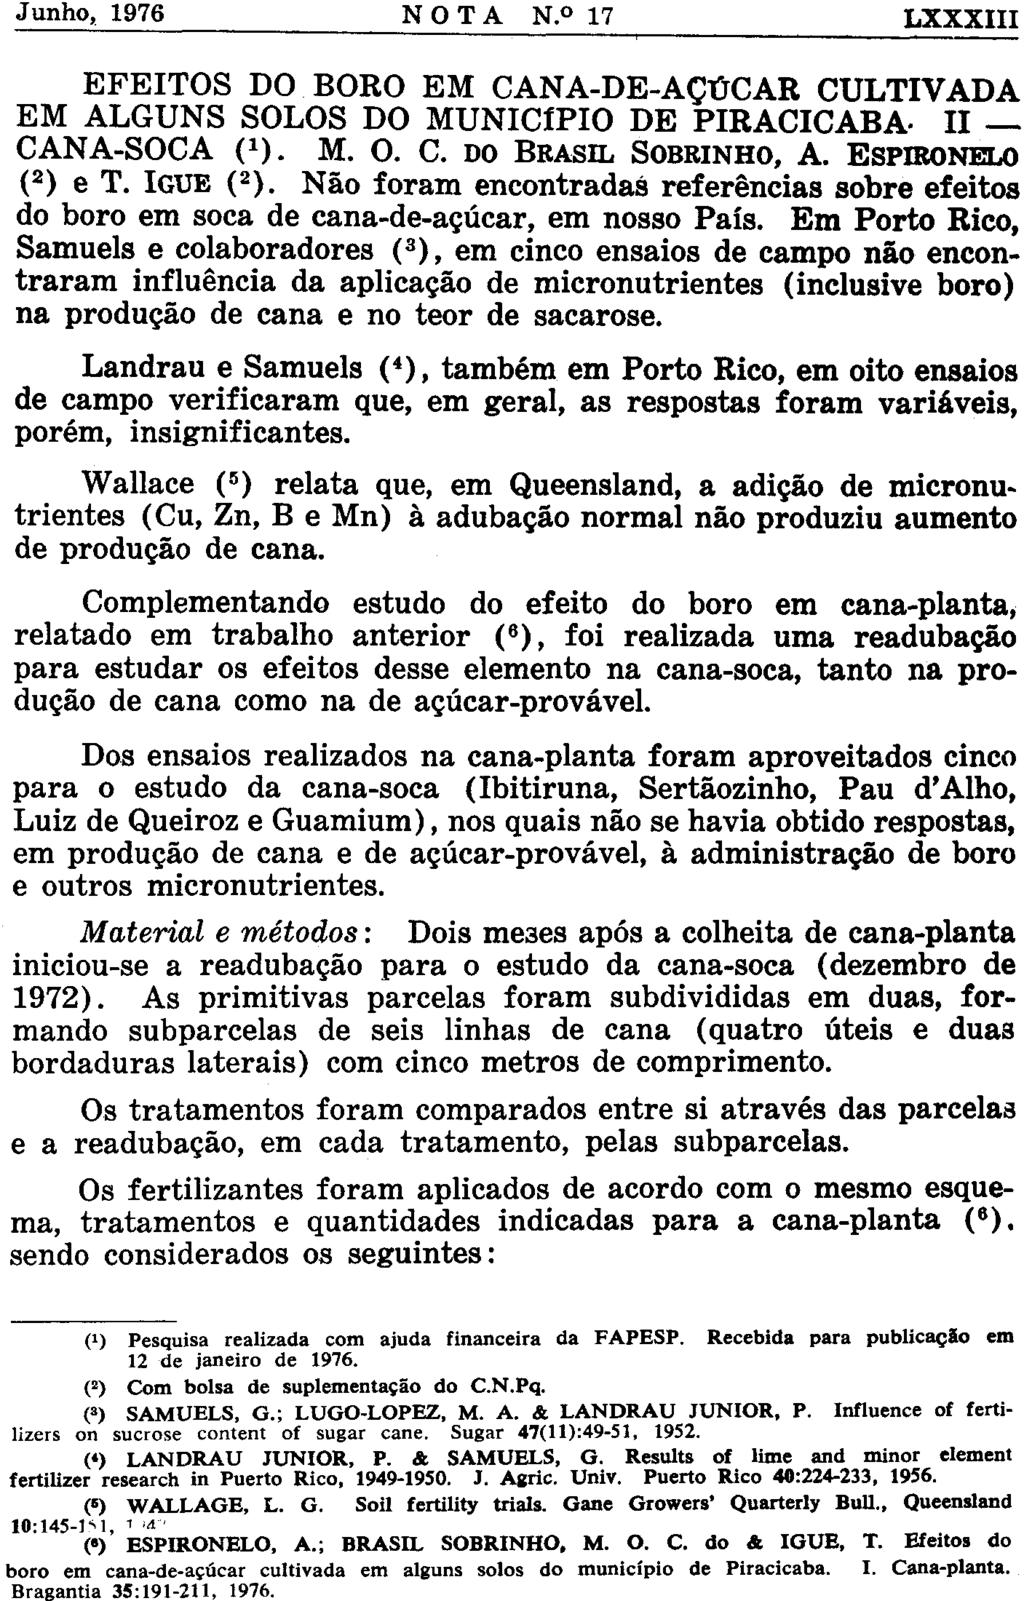 EFEITOS DO BORO EM CANA-DE-AÇÚCAR CULTIVADA EM ALGUNS SOLOS DO MUNICÍPIO DE PIRACICABA- II CANA-SOCA ( 1 ). M. O. C. DO BRASIL SOBRINHO, A. ESPIRONELO ( 2 ) e T. IGUE ( 2 ).